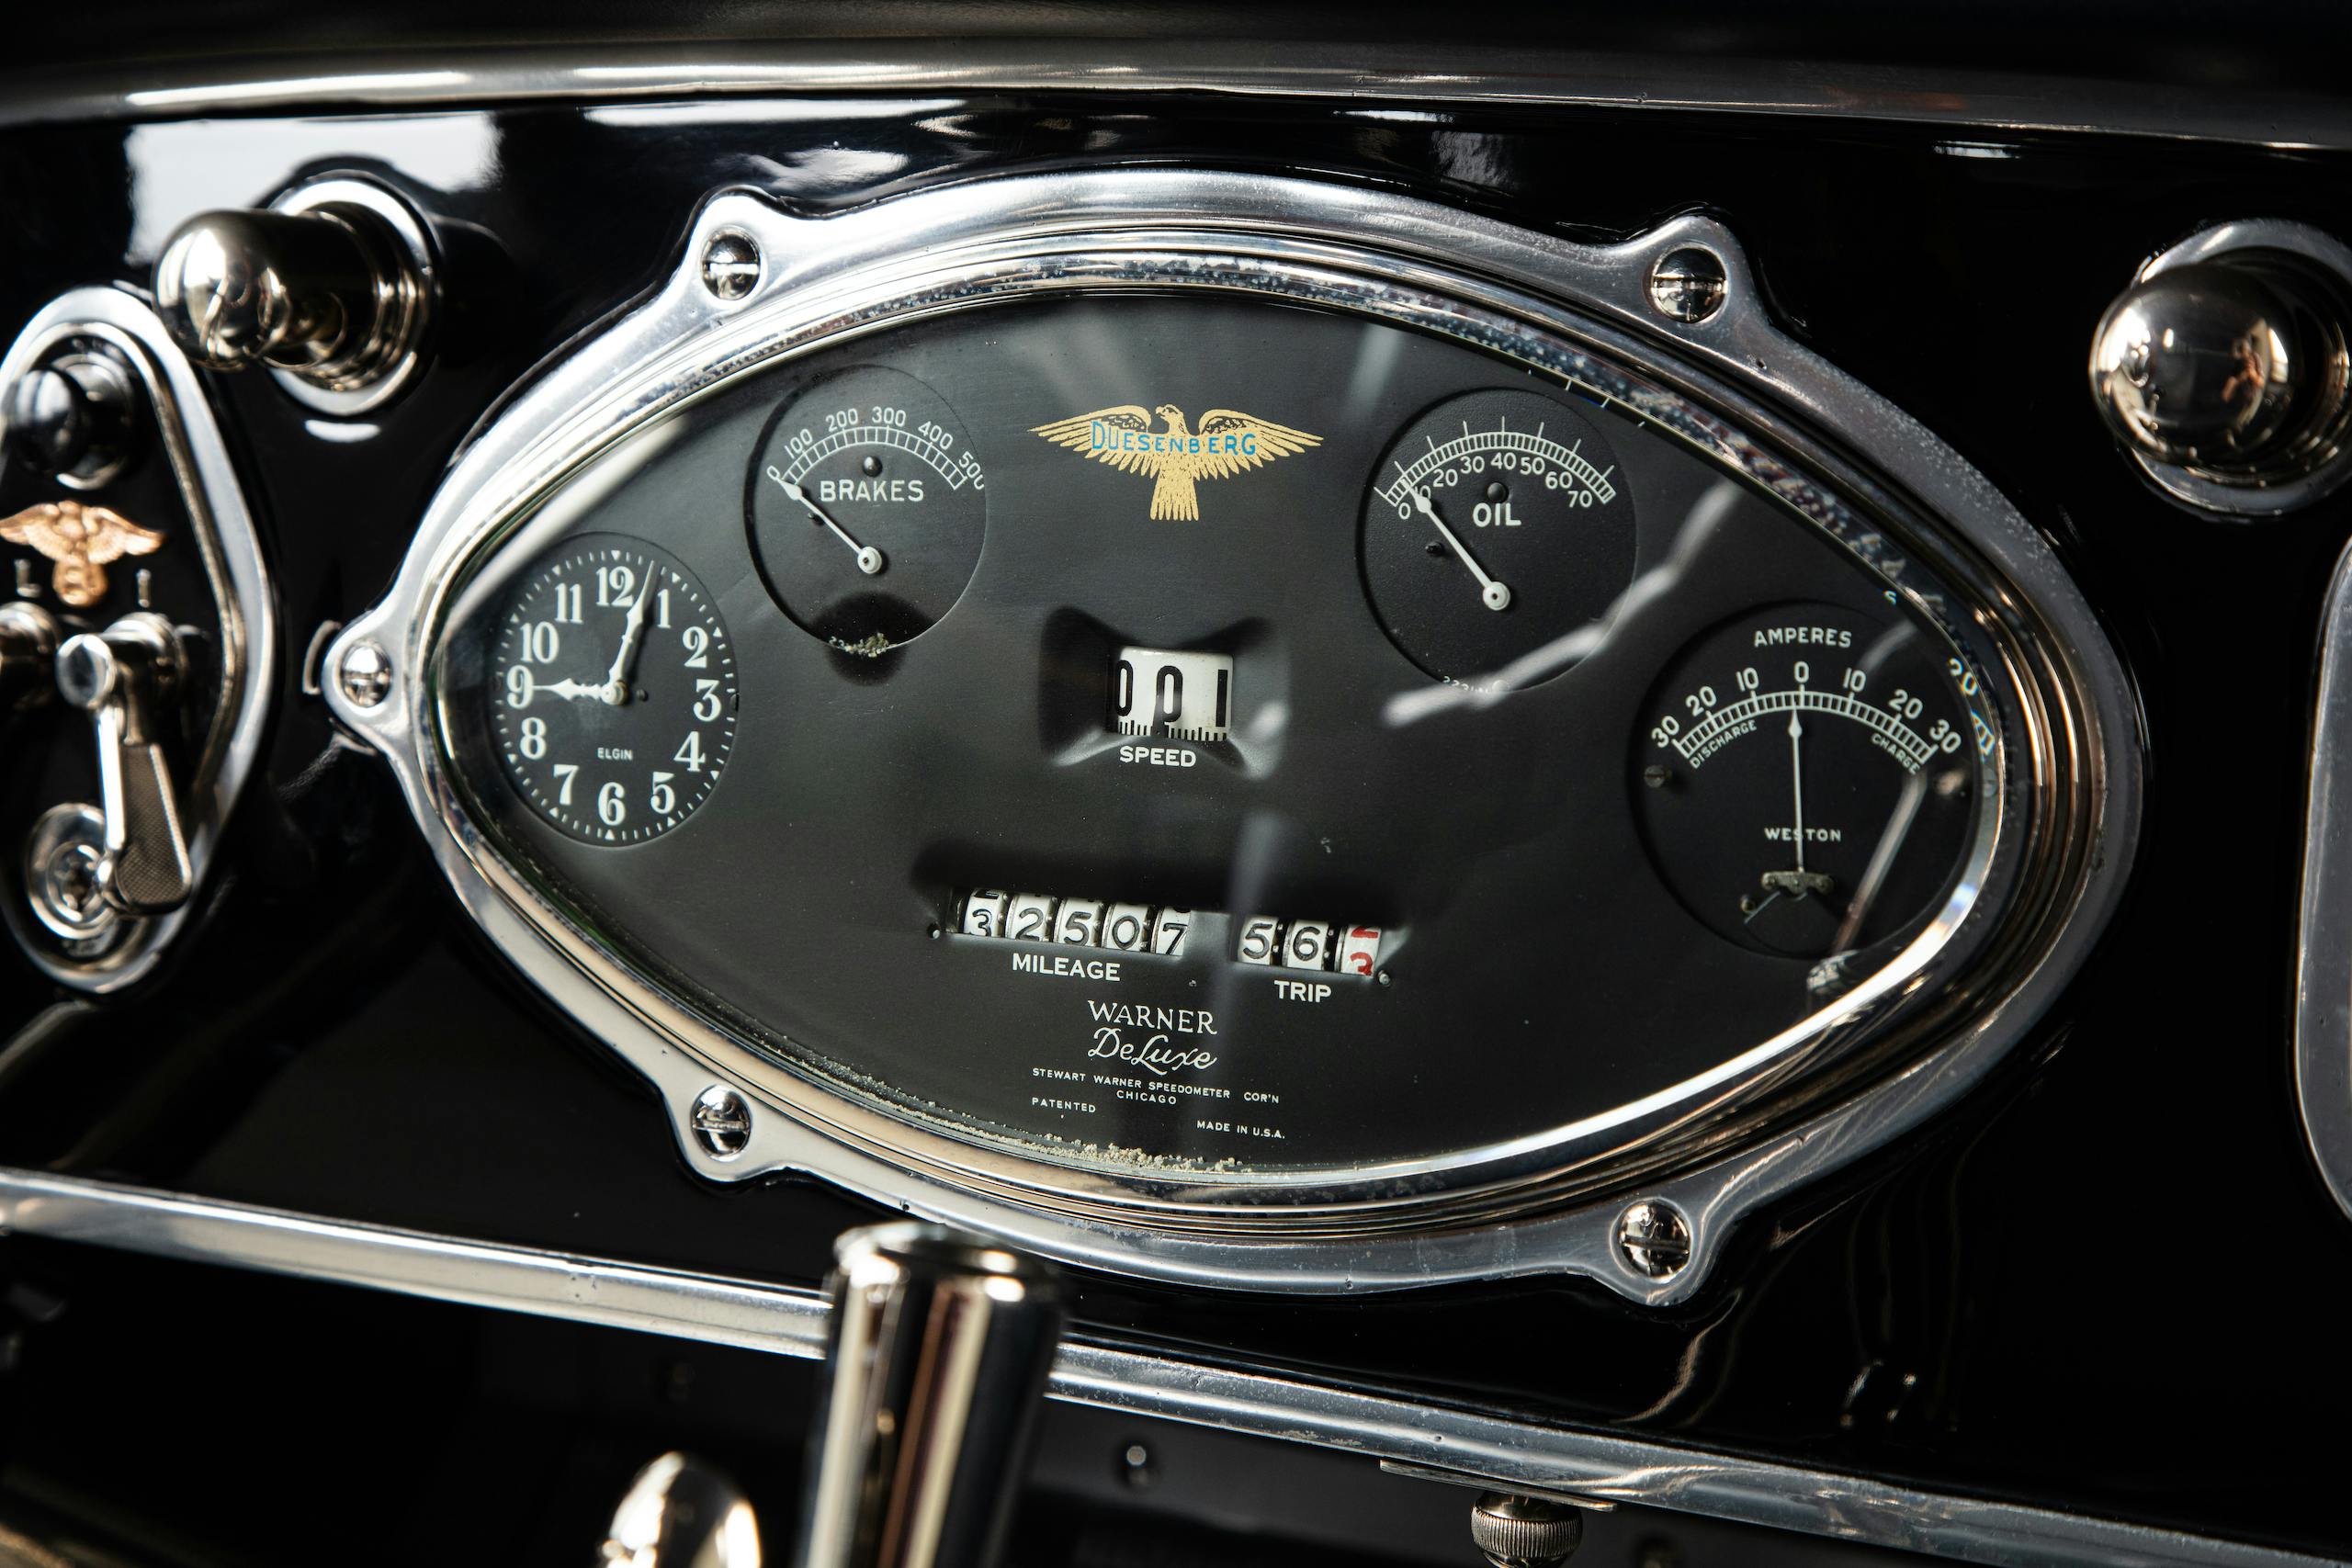 Duesenberg dash and gauges detail